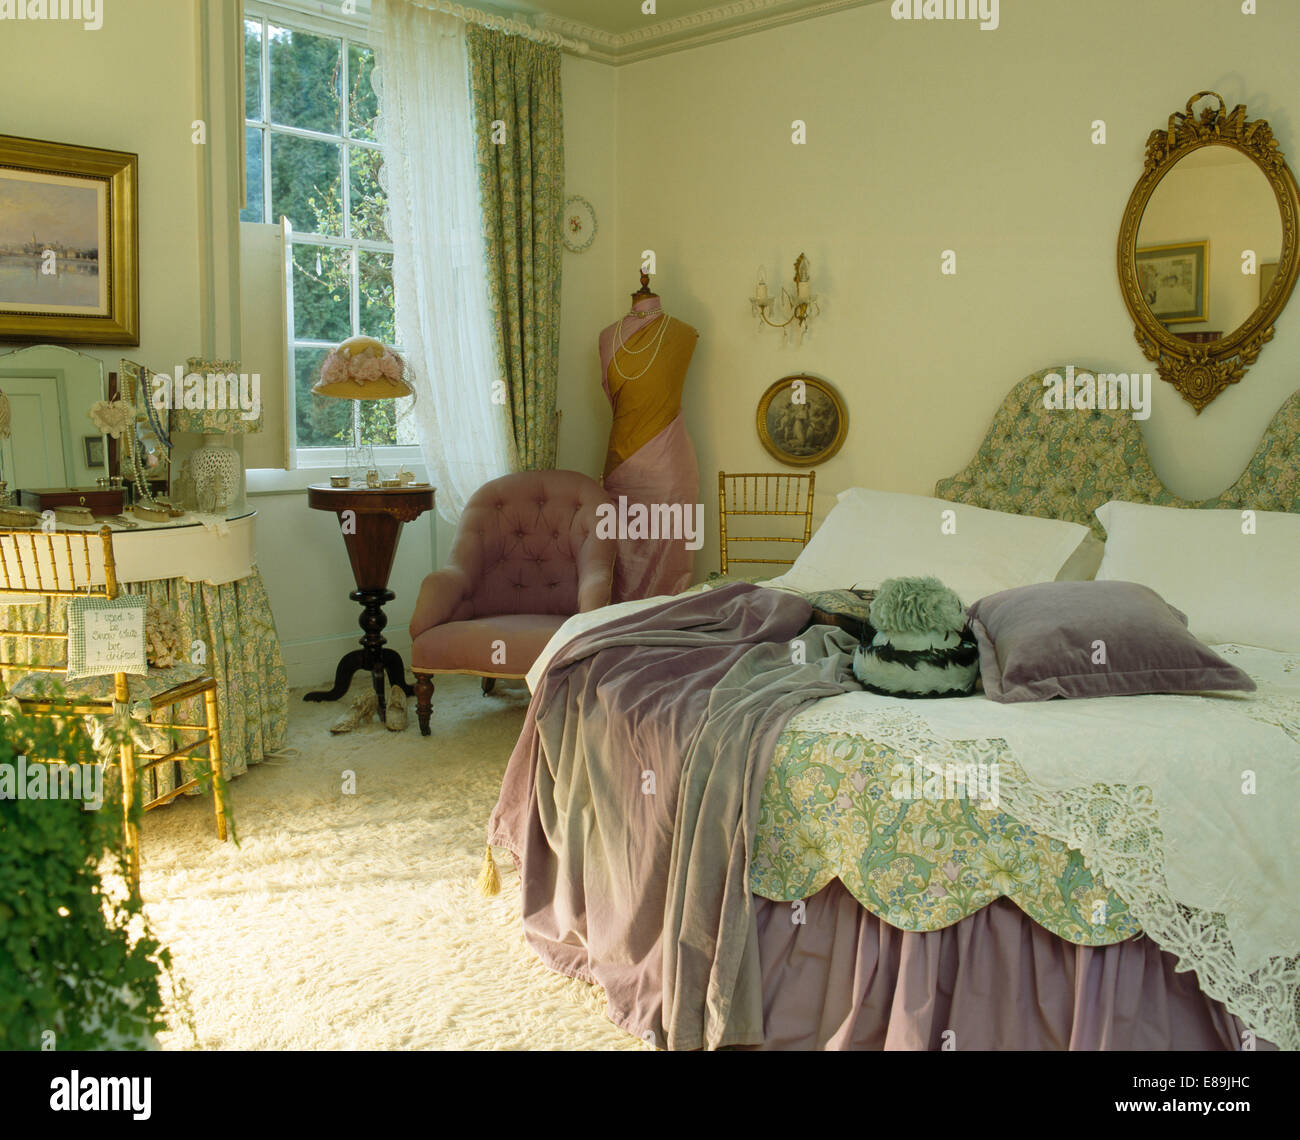 Jet mauve sur lit avec couette vert pâle et couvre-lit en dentelle en pays chambre avec fauteuil rose Banque D'Images